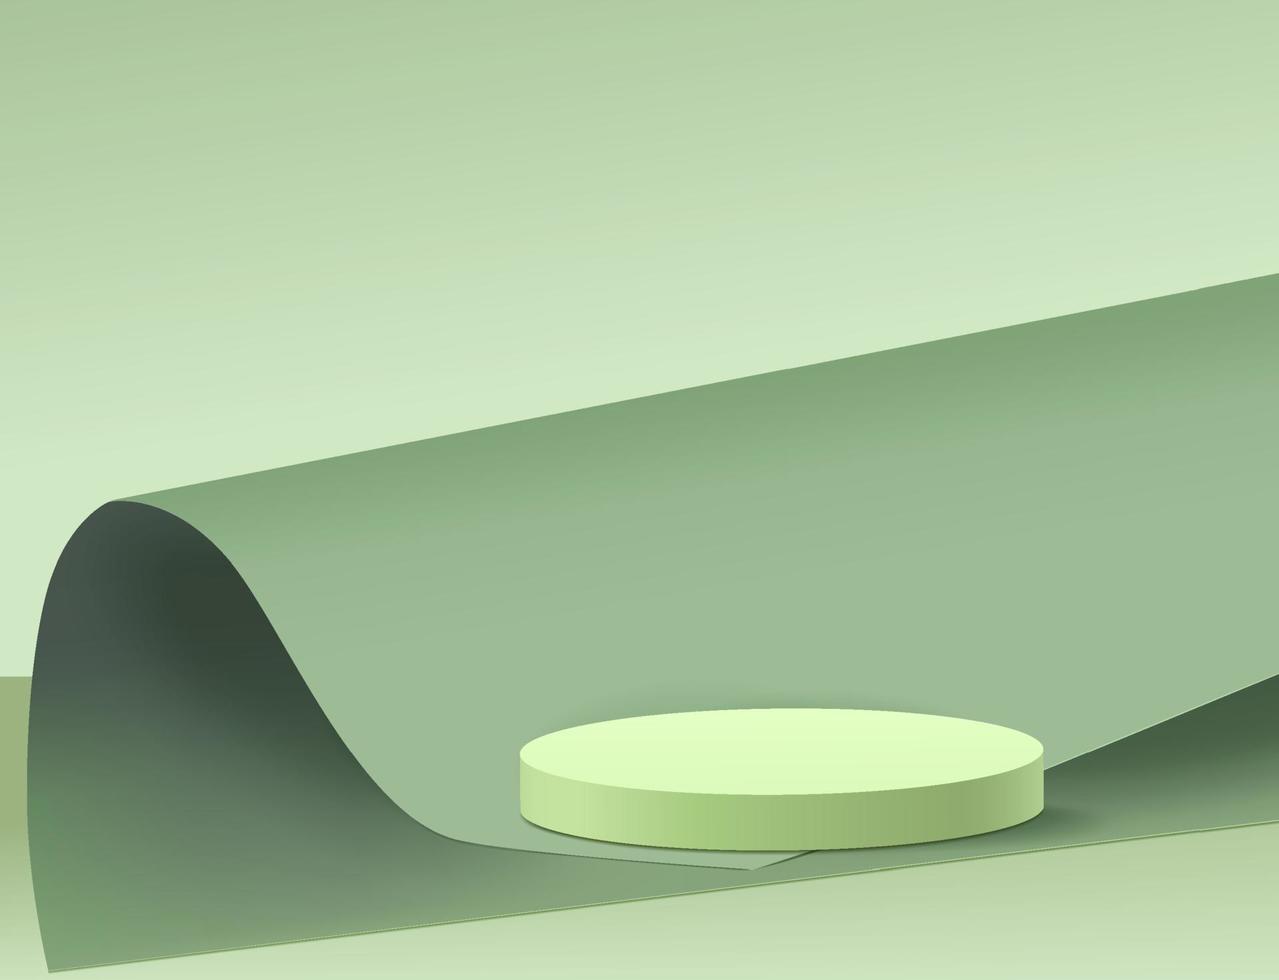 podium de piédestal de cylindre 3d abstrait avec plate-forme de cube géométrique. rendu vectoriel moderne pour la présentation des produits cosmétiques.